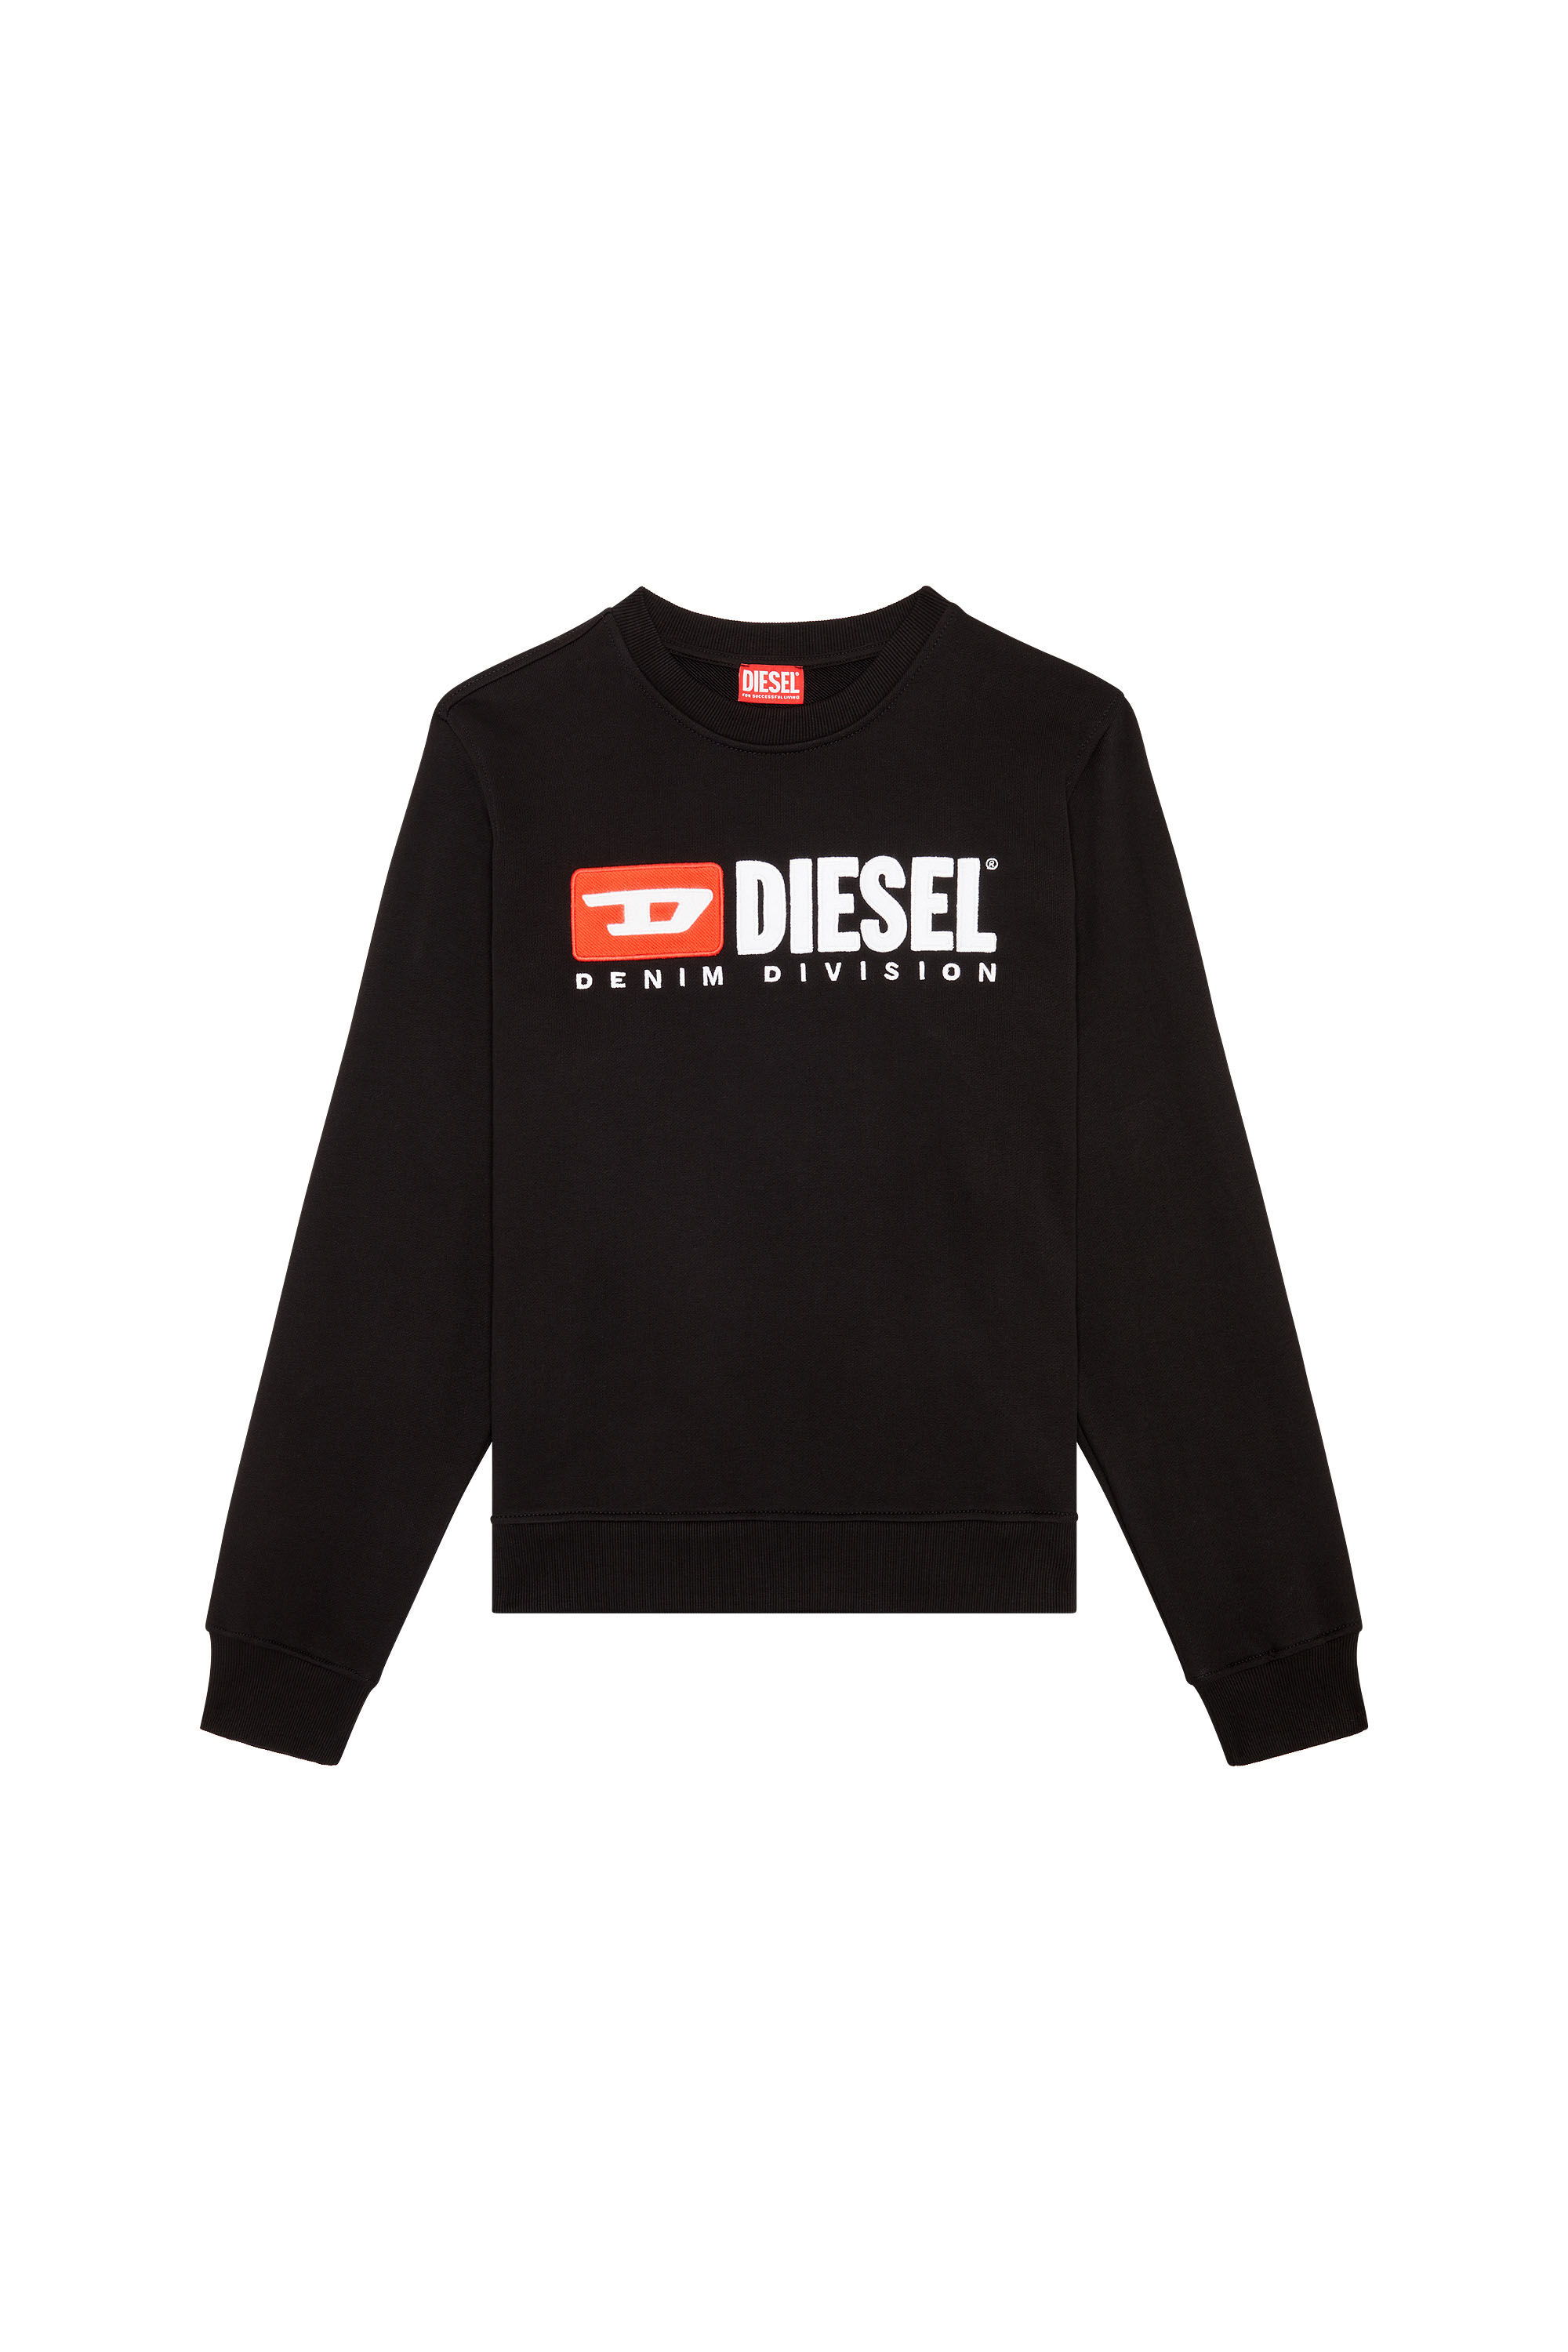 Diesel - S-GINN-DIV, Negro - Image 2